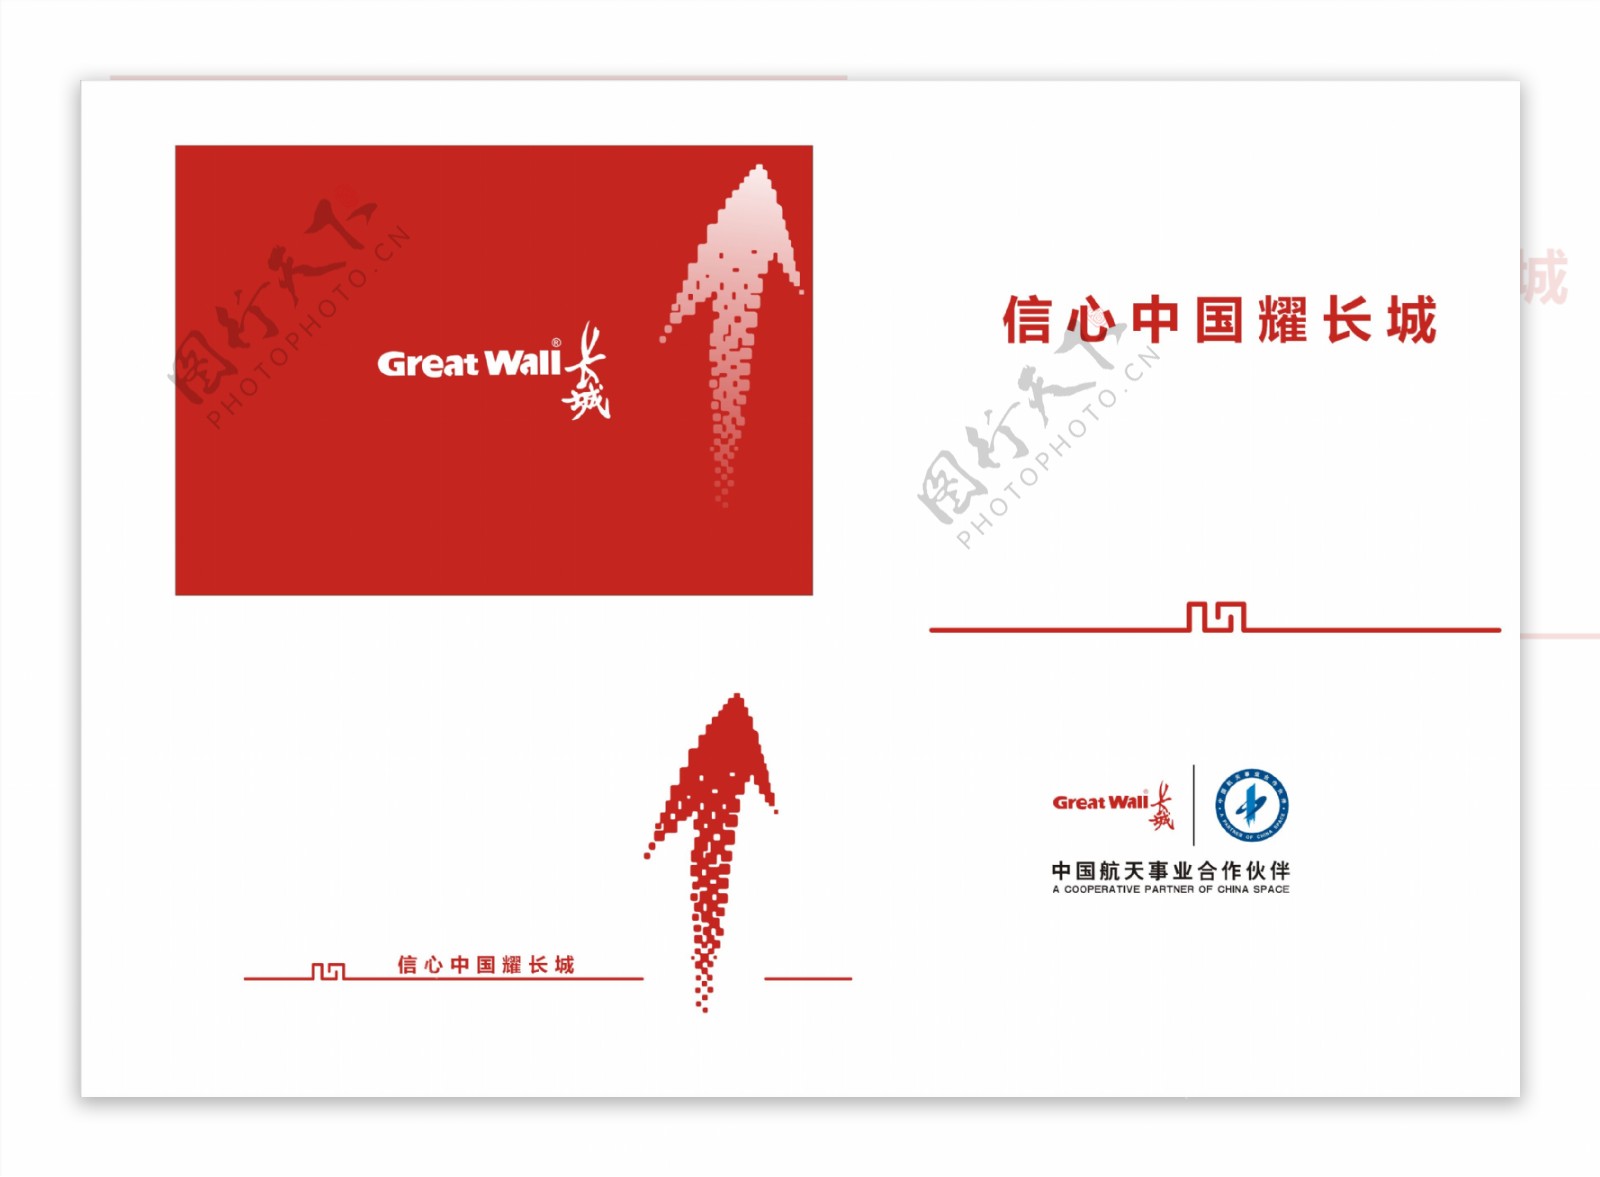 greatwall长城logo